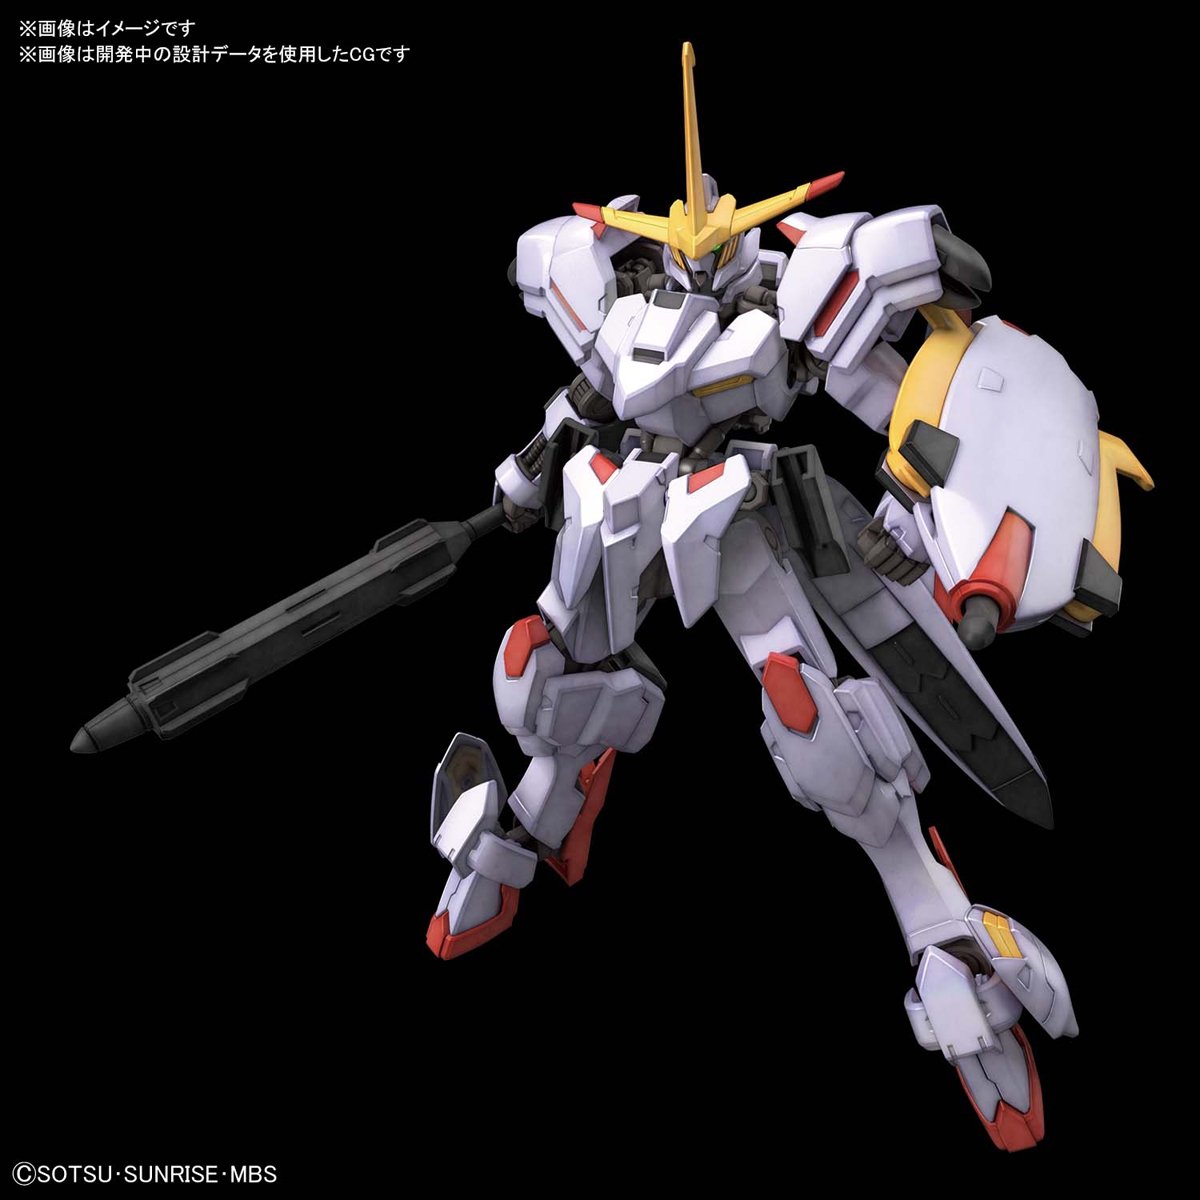 Gunpla HG 1/144 Gundam Hajiraboshi-Bandai-Ace Cards &amp; Collectibles